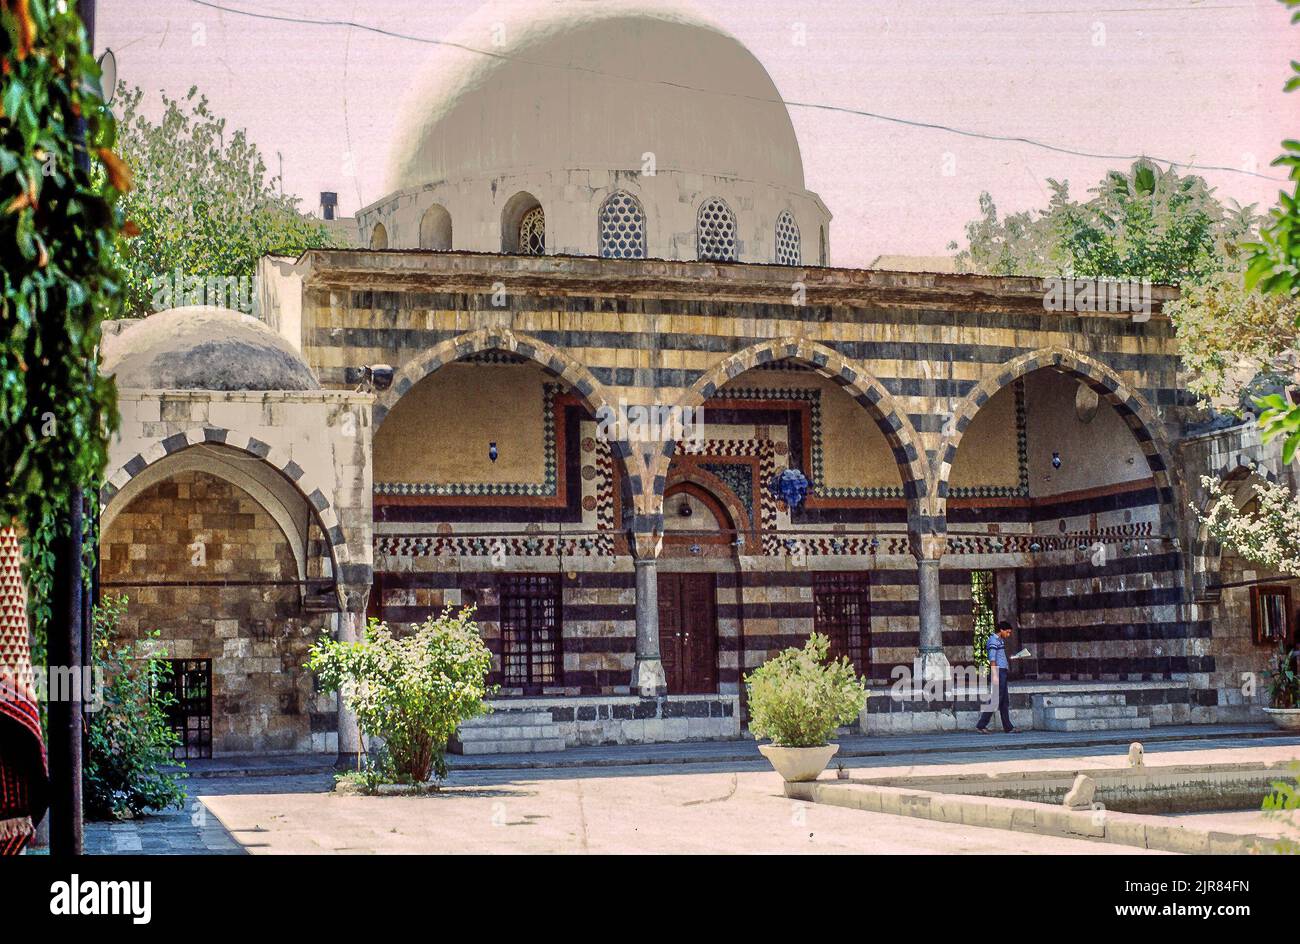 Patio de la mezquita de la era otomana Tekiye Al Suleimaniyeh (siglo 16th dC), Damasco, Siria Foto de stock